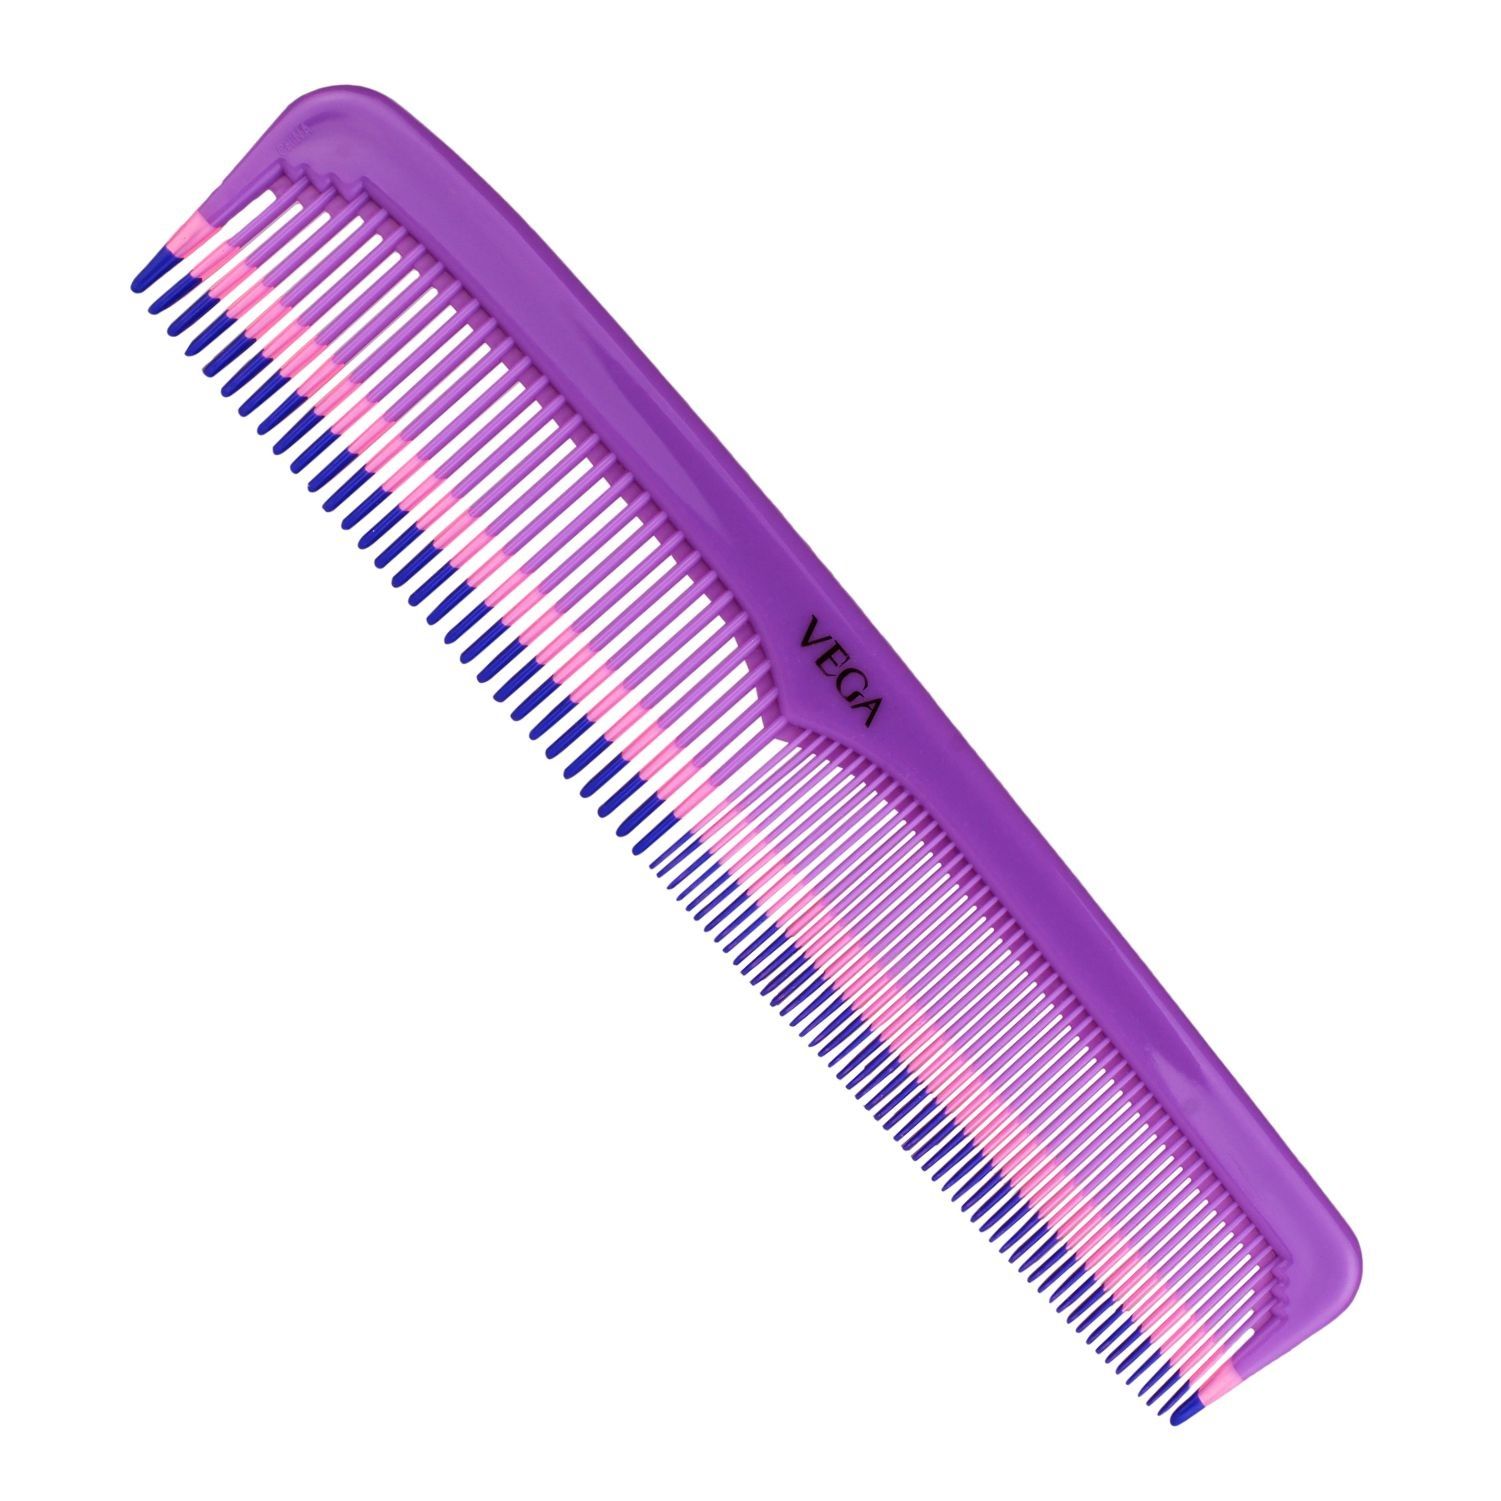 VEGA Regular Hair Comb -1299 (Color May Vary)